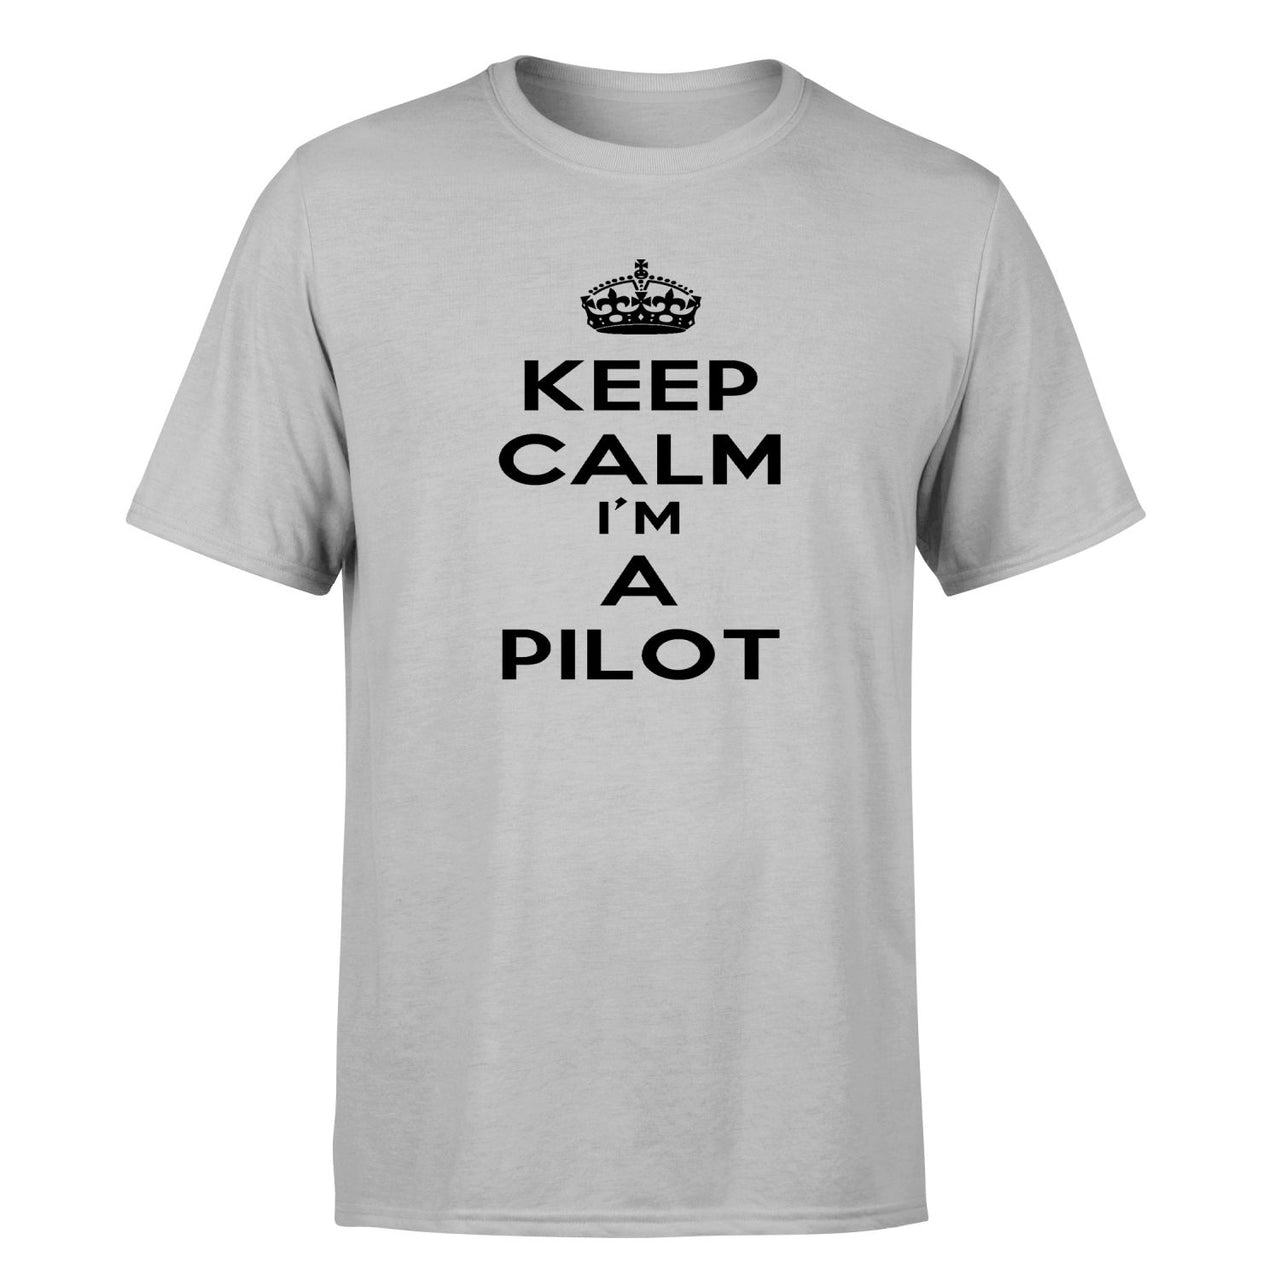 Keep Calm I'm a Pilot Designed T-Shirts